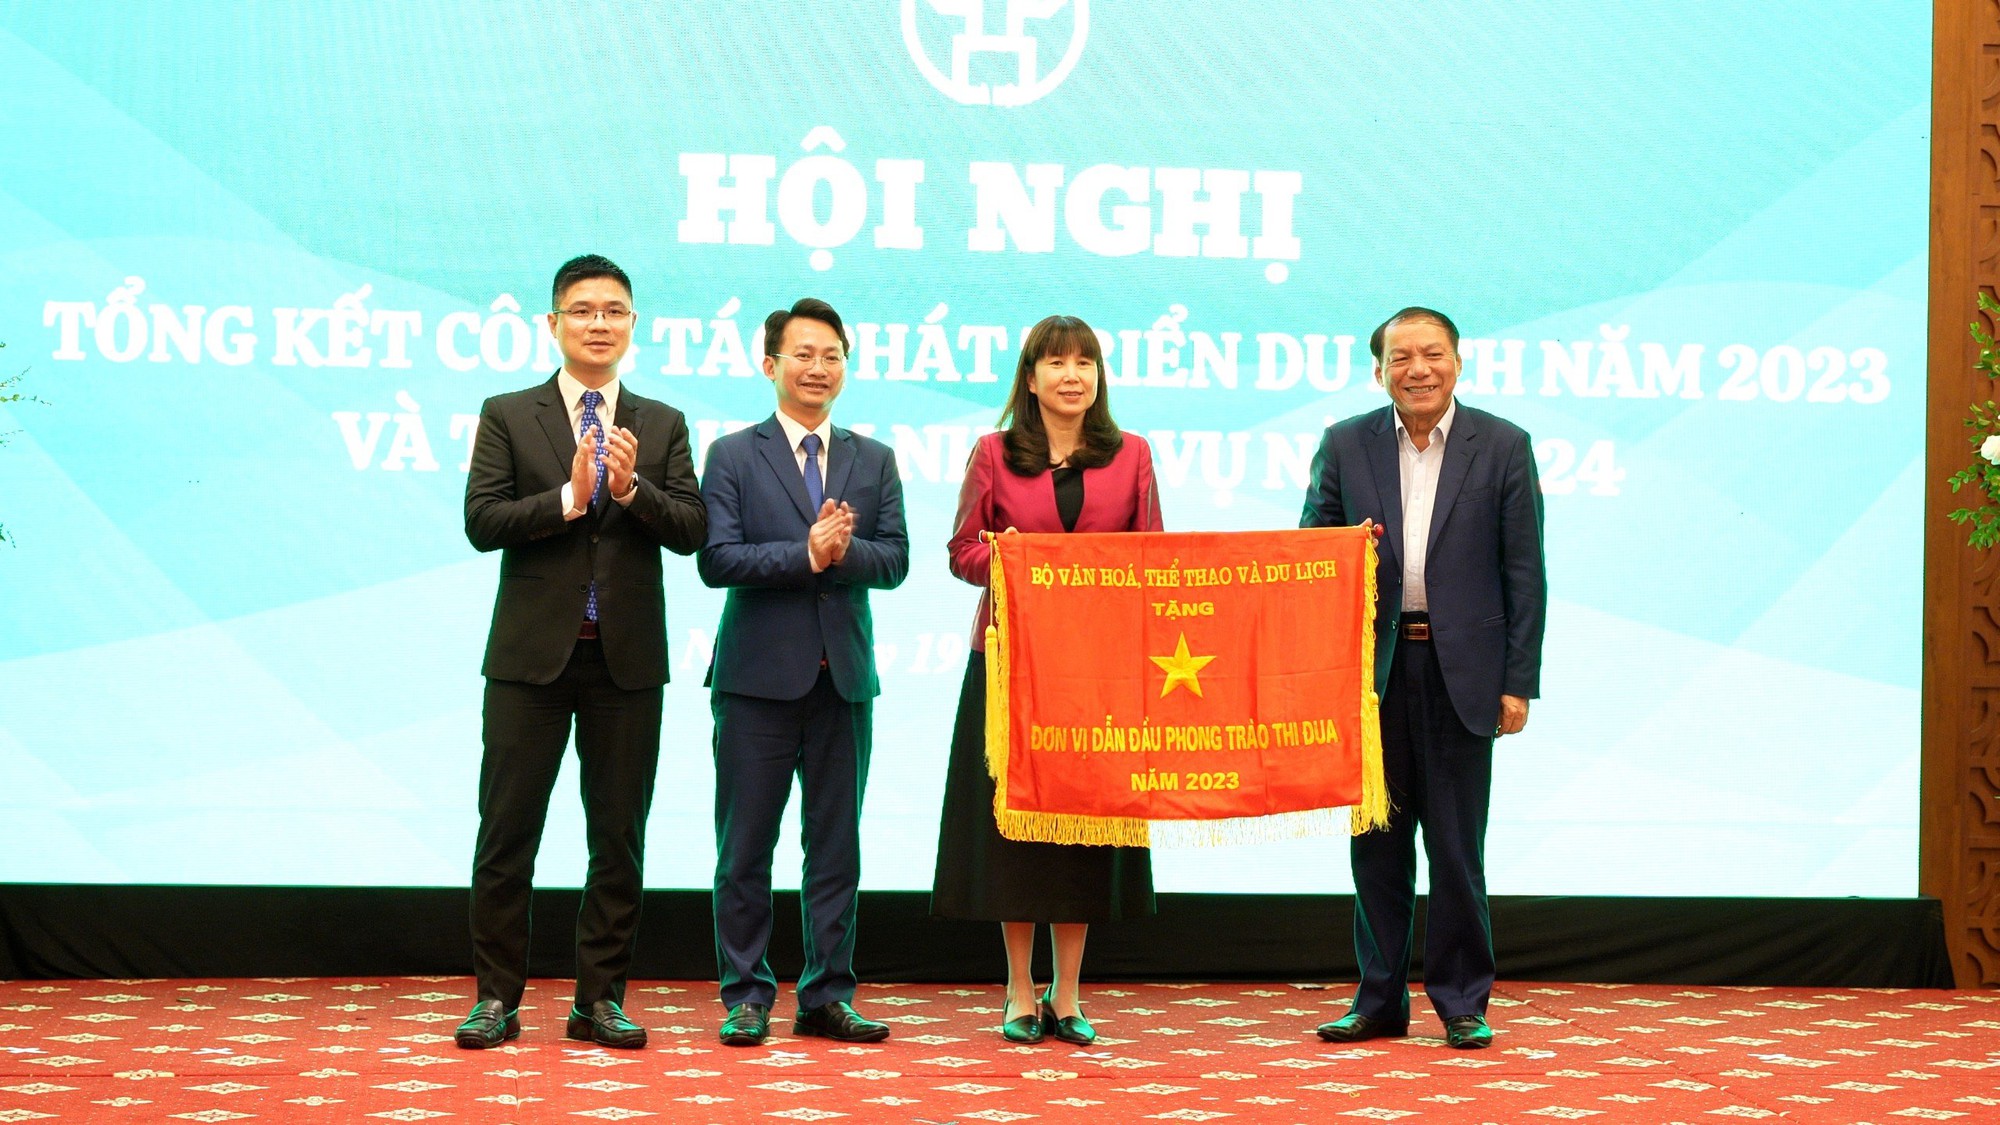 Bộ trưởng Nguyễn Văn Hùng: Hà Nội cần đi tiên phong trong việc chuyển đổi số trong lĩnh vực du lịch - Ảnh 2.